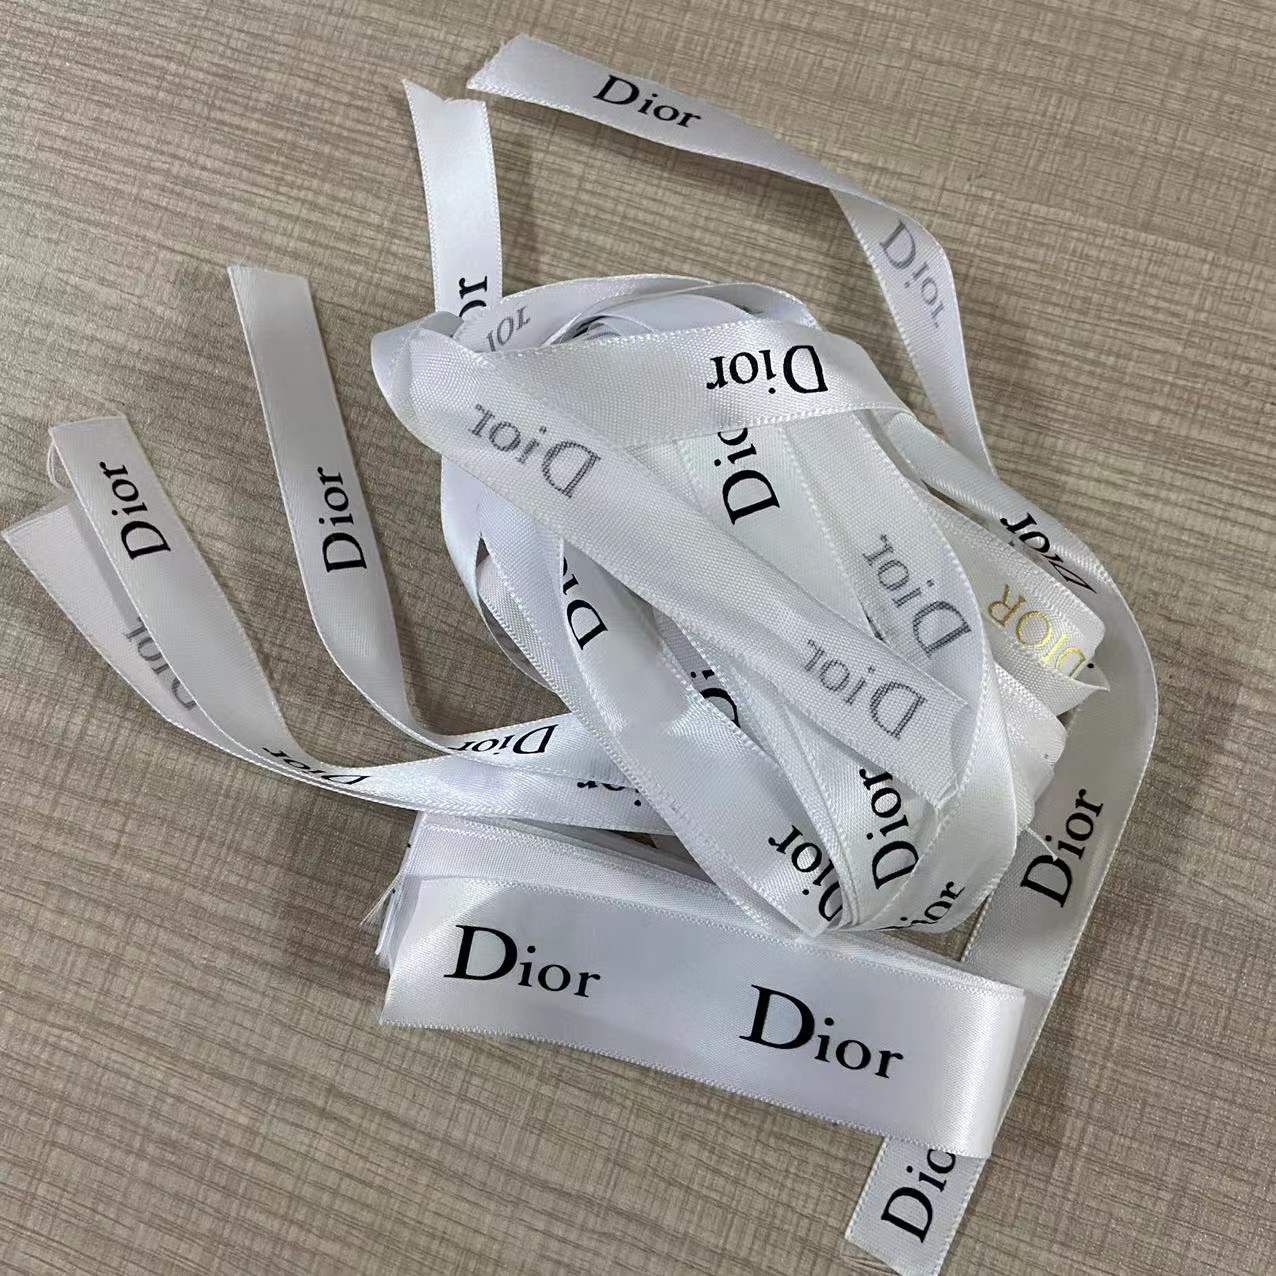 Dior ribbon/Lace 100cm